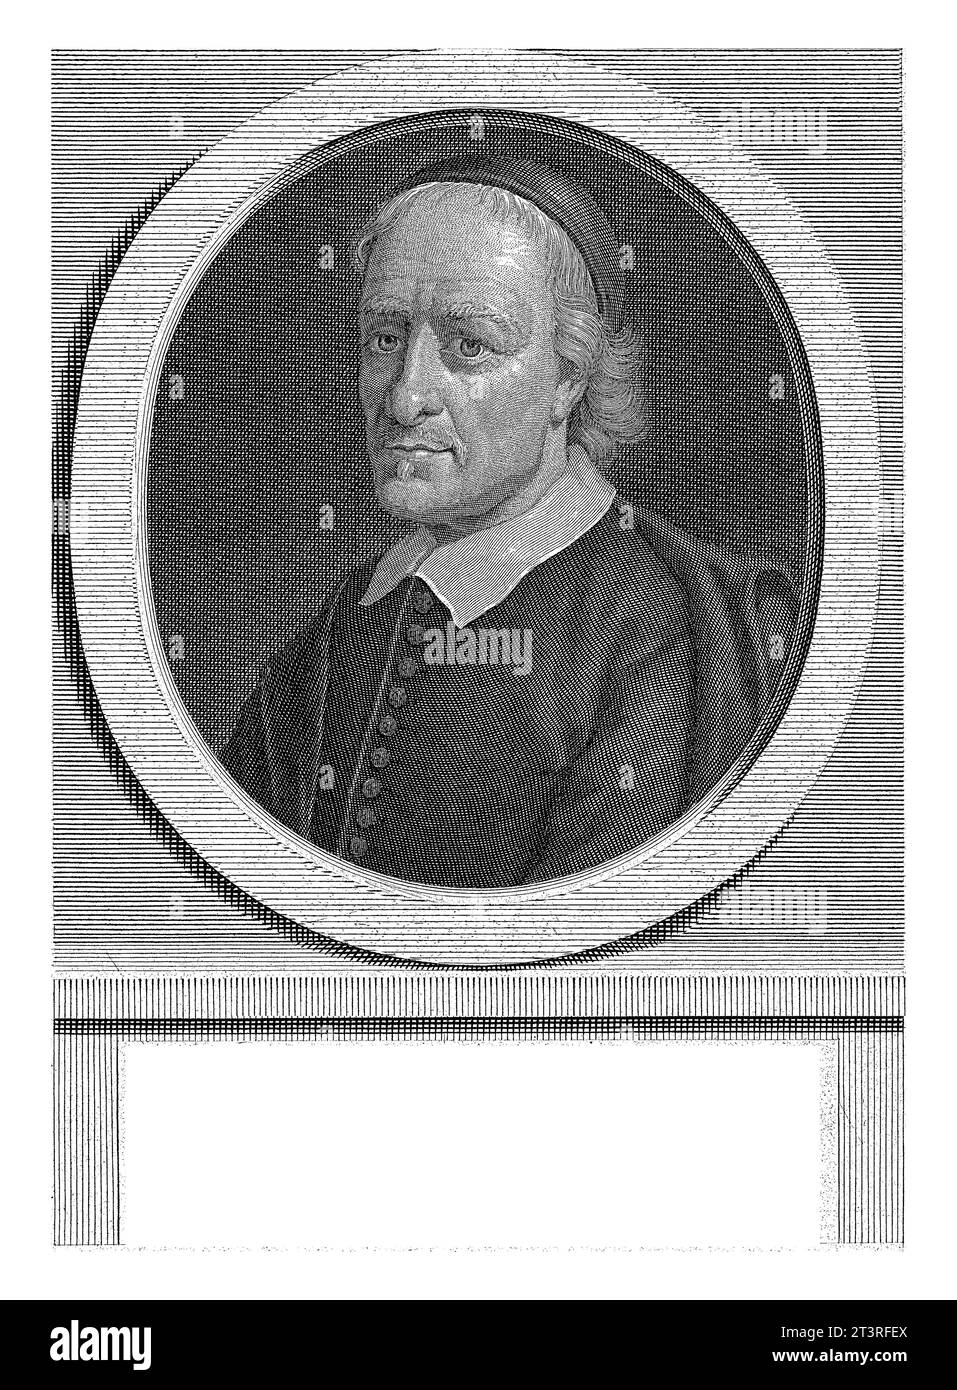 Porträt von Galen Abrahamsz. De Haan, Pieter van Gunst, nach Michiel van Musscher, 1706 - 1731 Galen Abrahamsz. De Haan, mennonitischer Minister und Physi Stockfoto